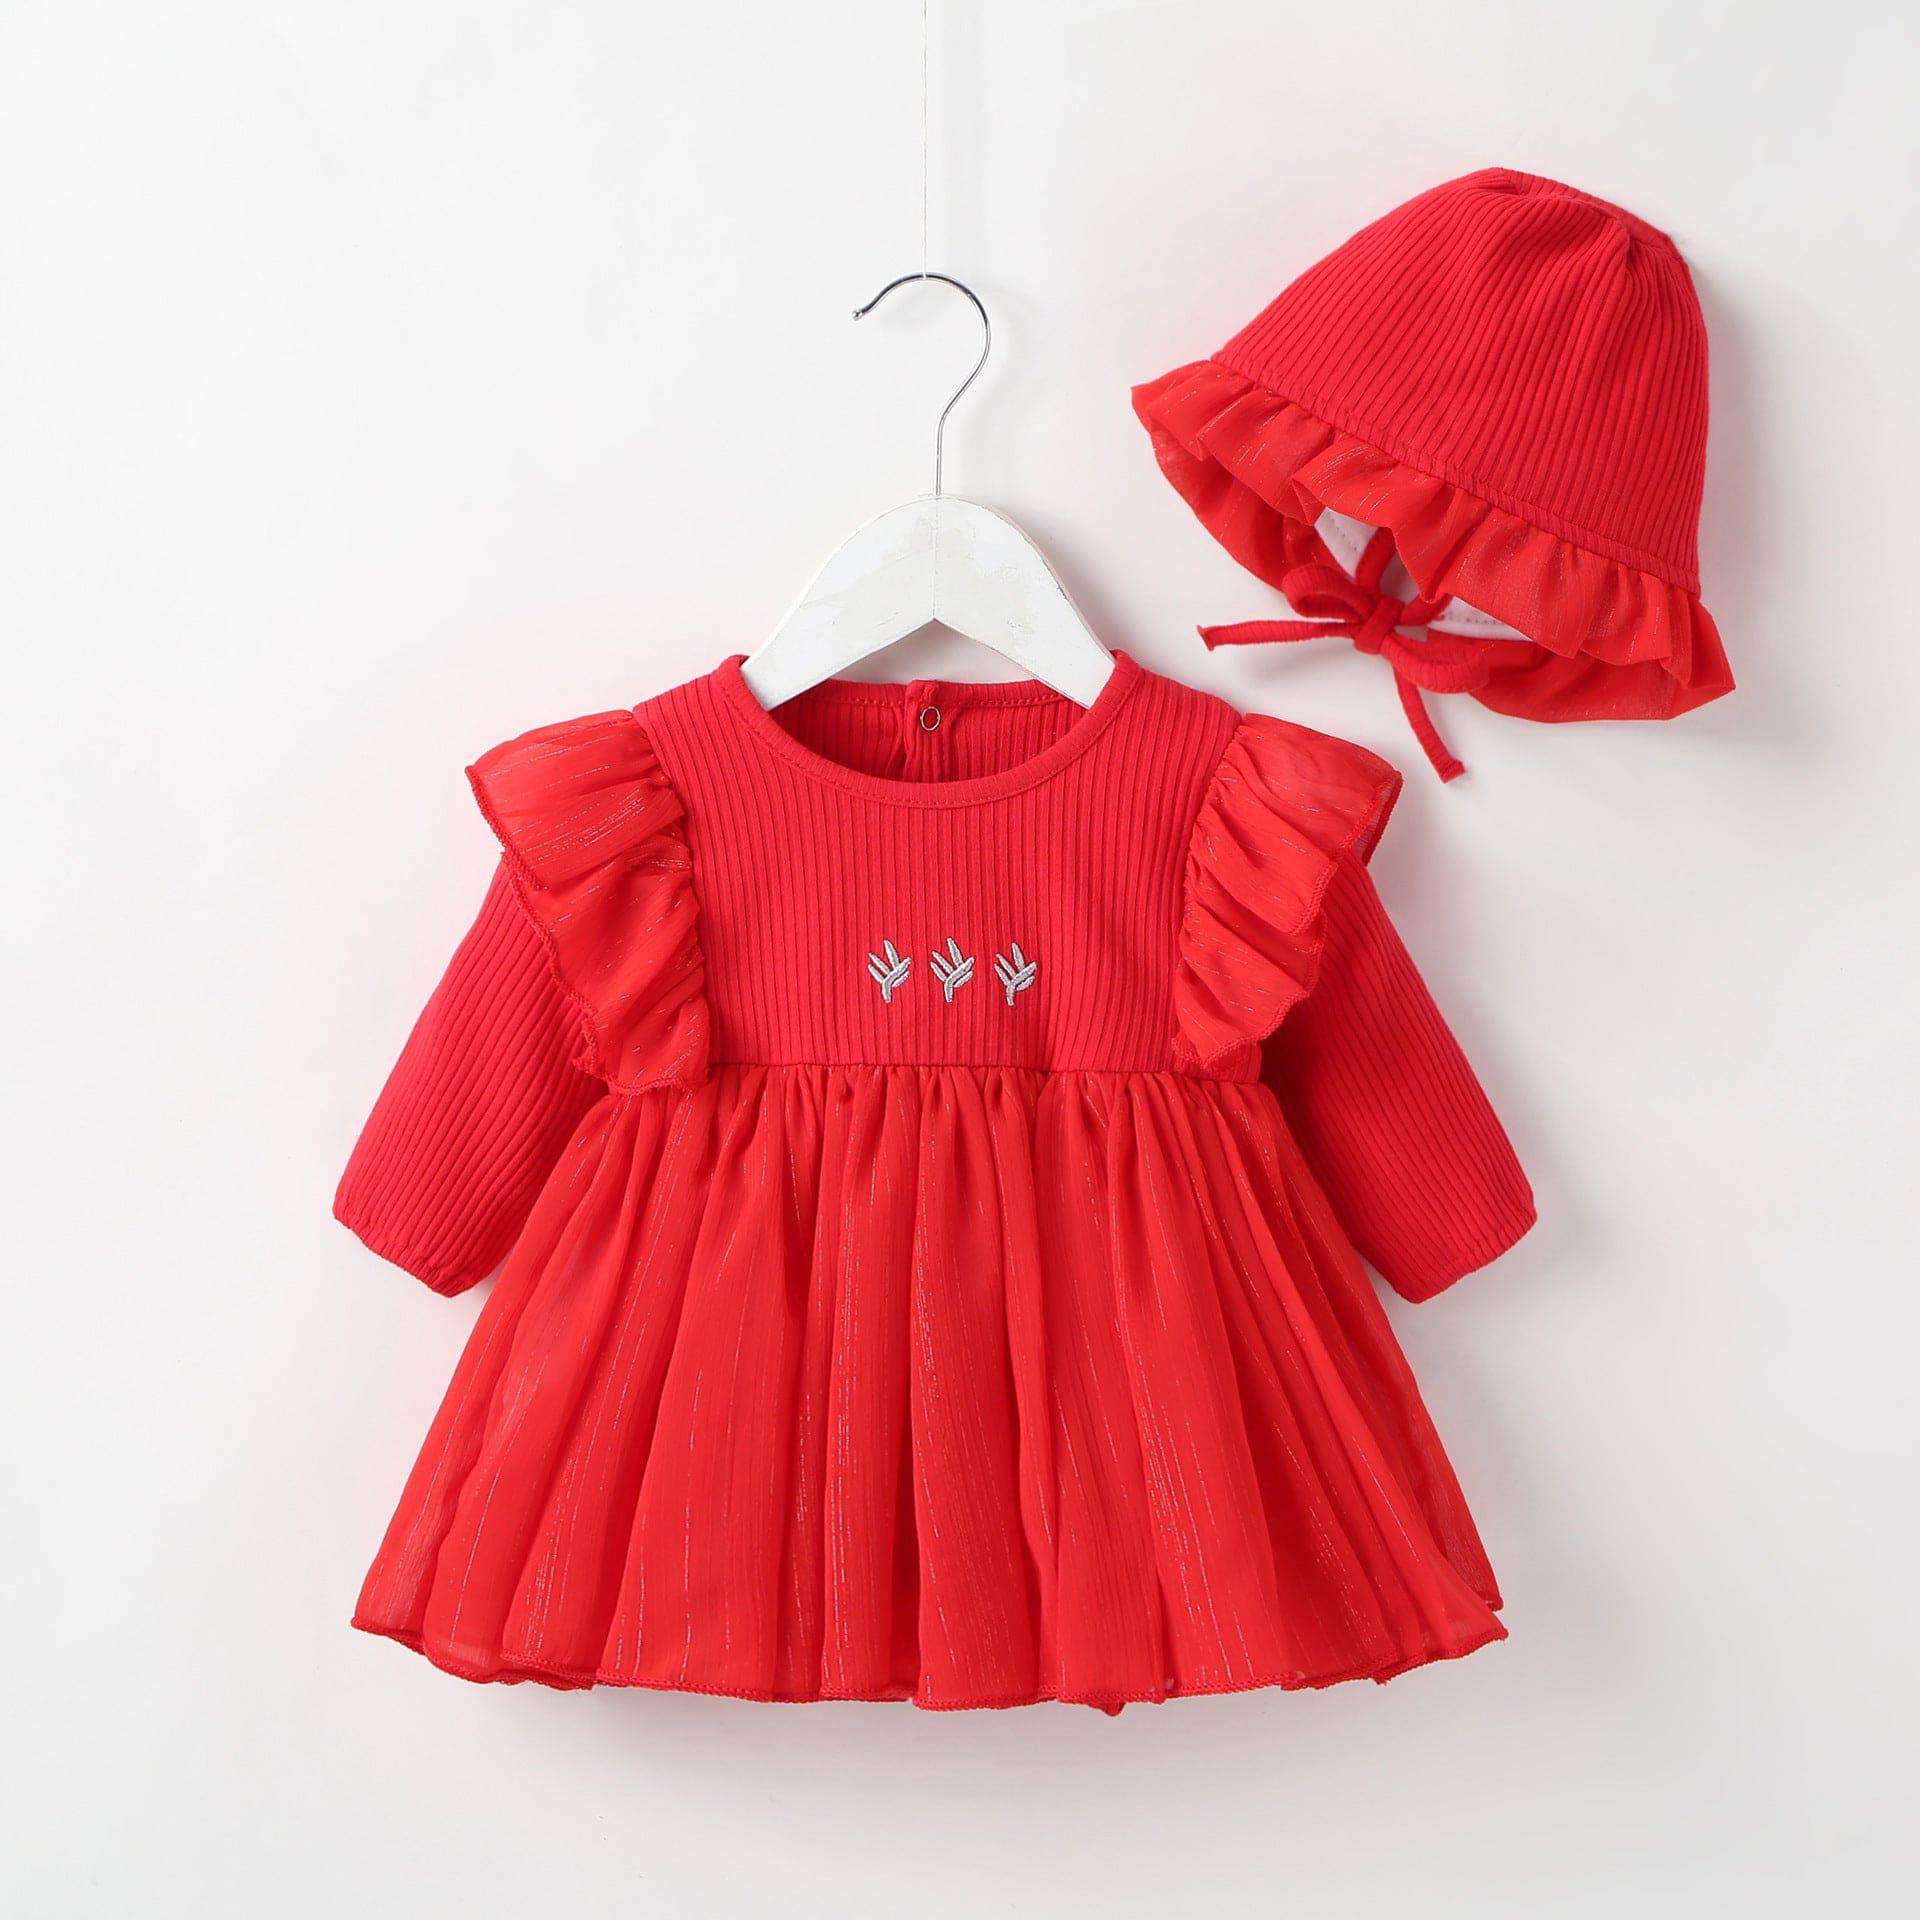 Baby Princess Dress - LITTLE BEDOUIN